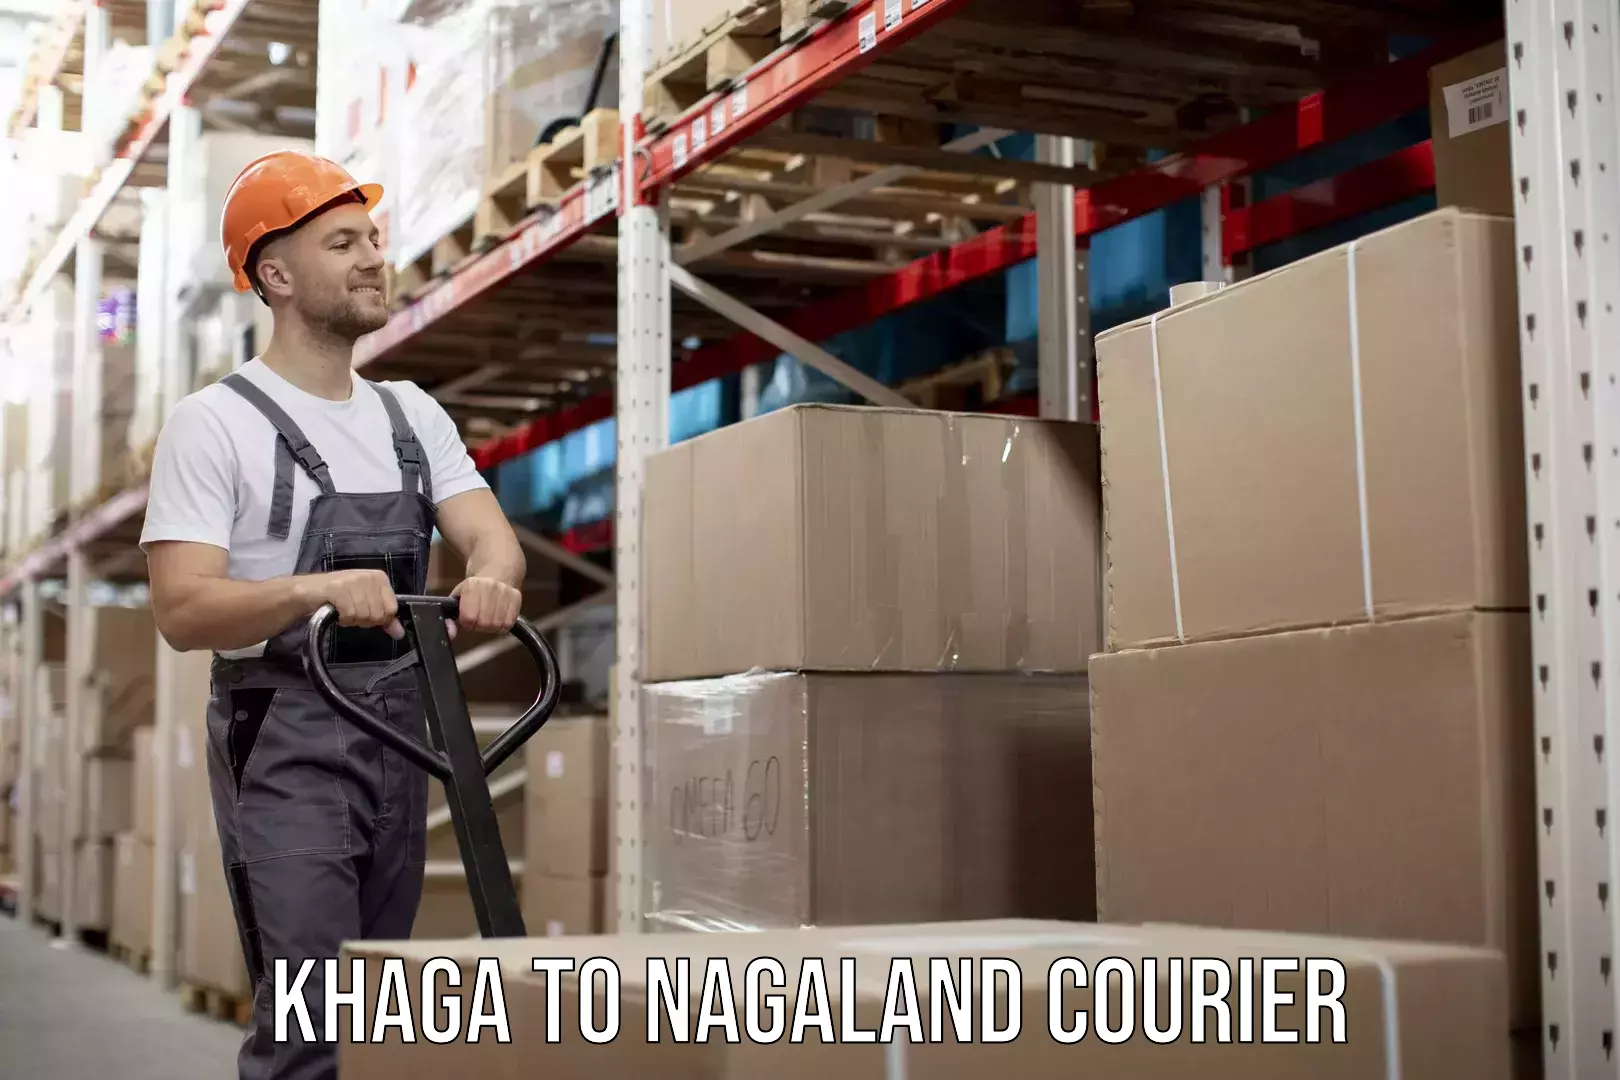 Moving and packing experts Khaga to Nagaland